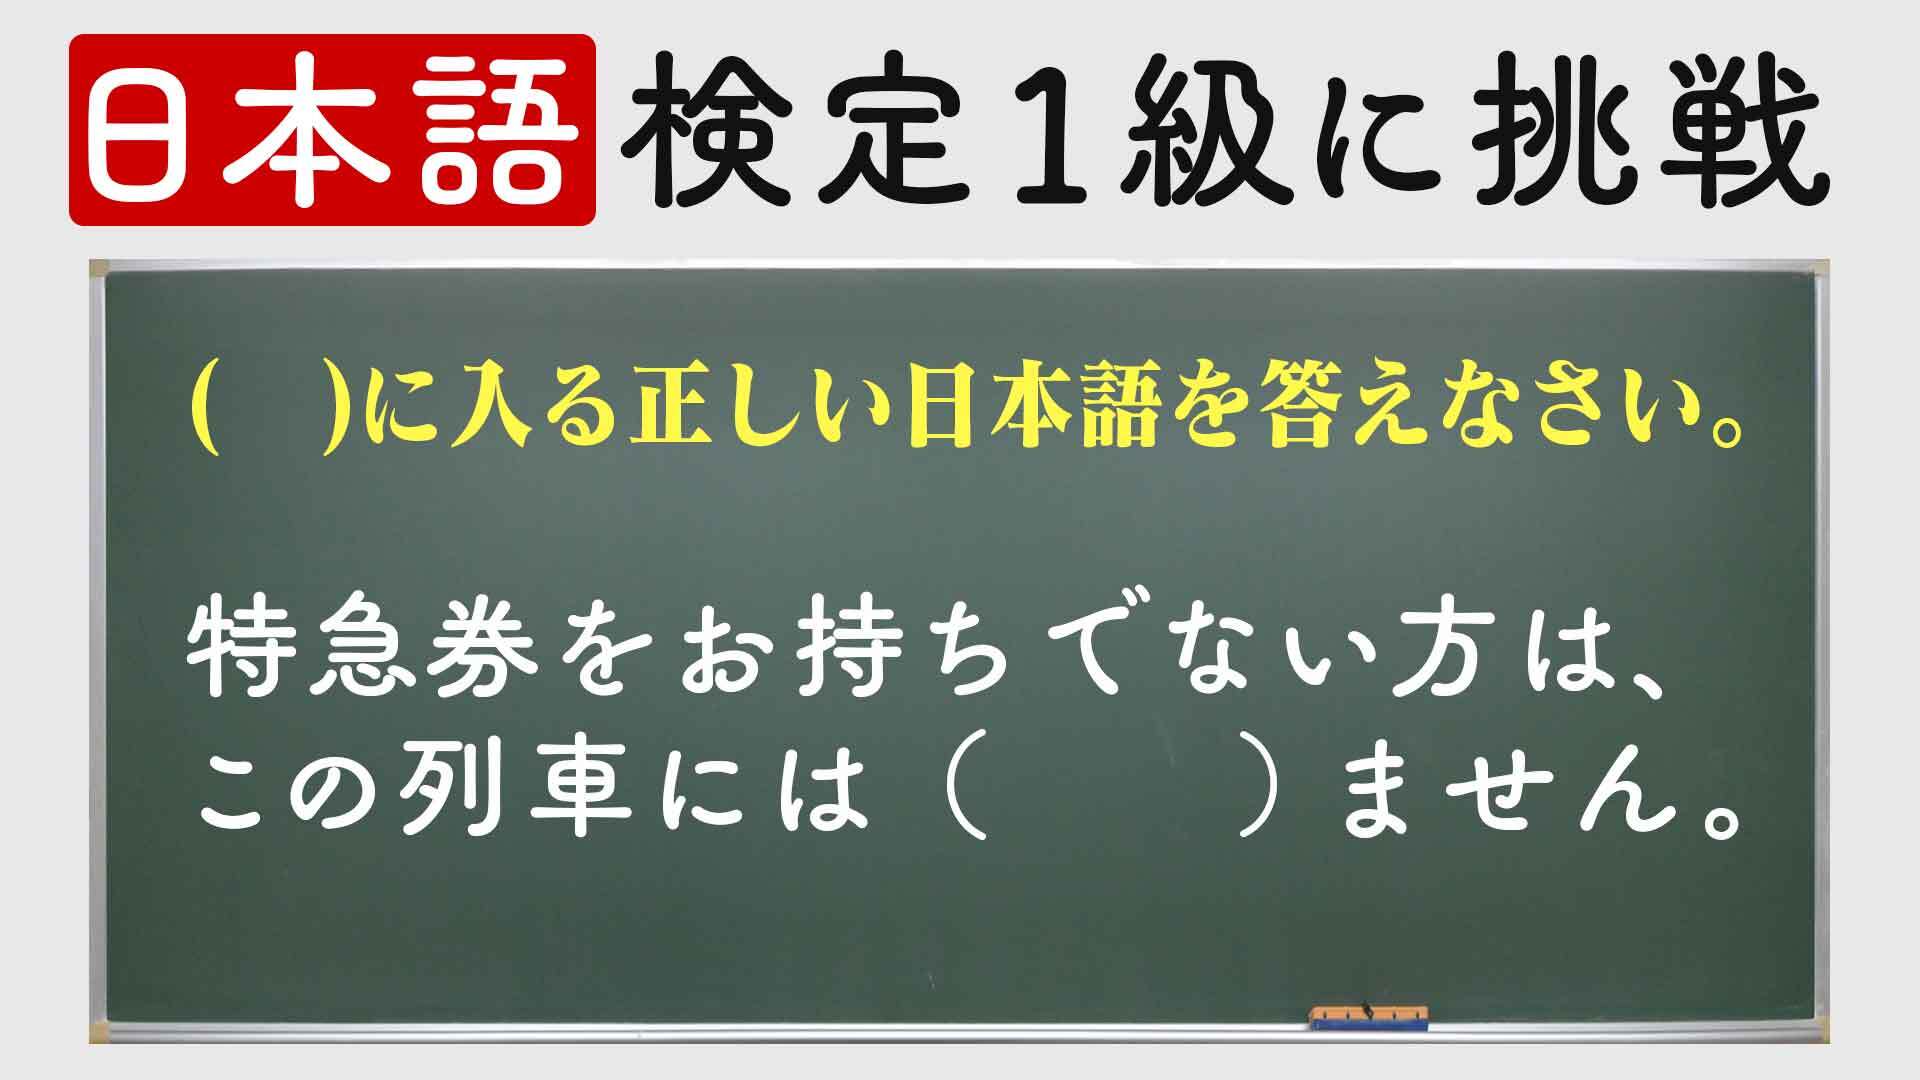 その日本語 間違ってるかも 日本語検定1級 社会人レベルに挑戦